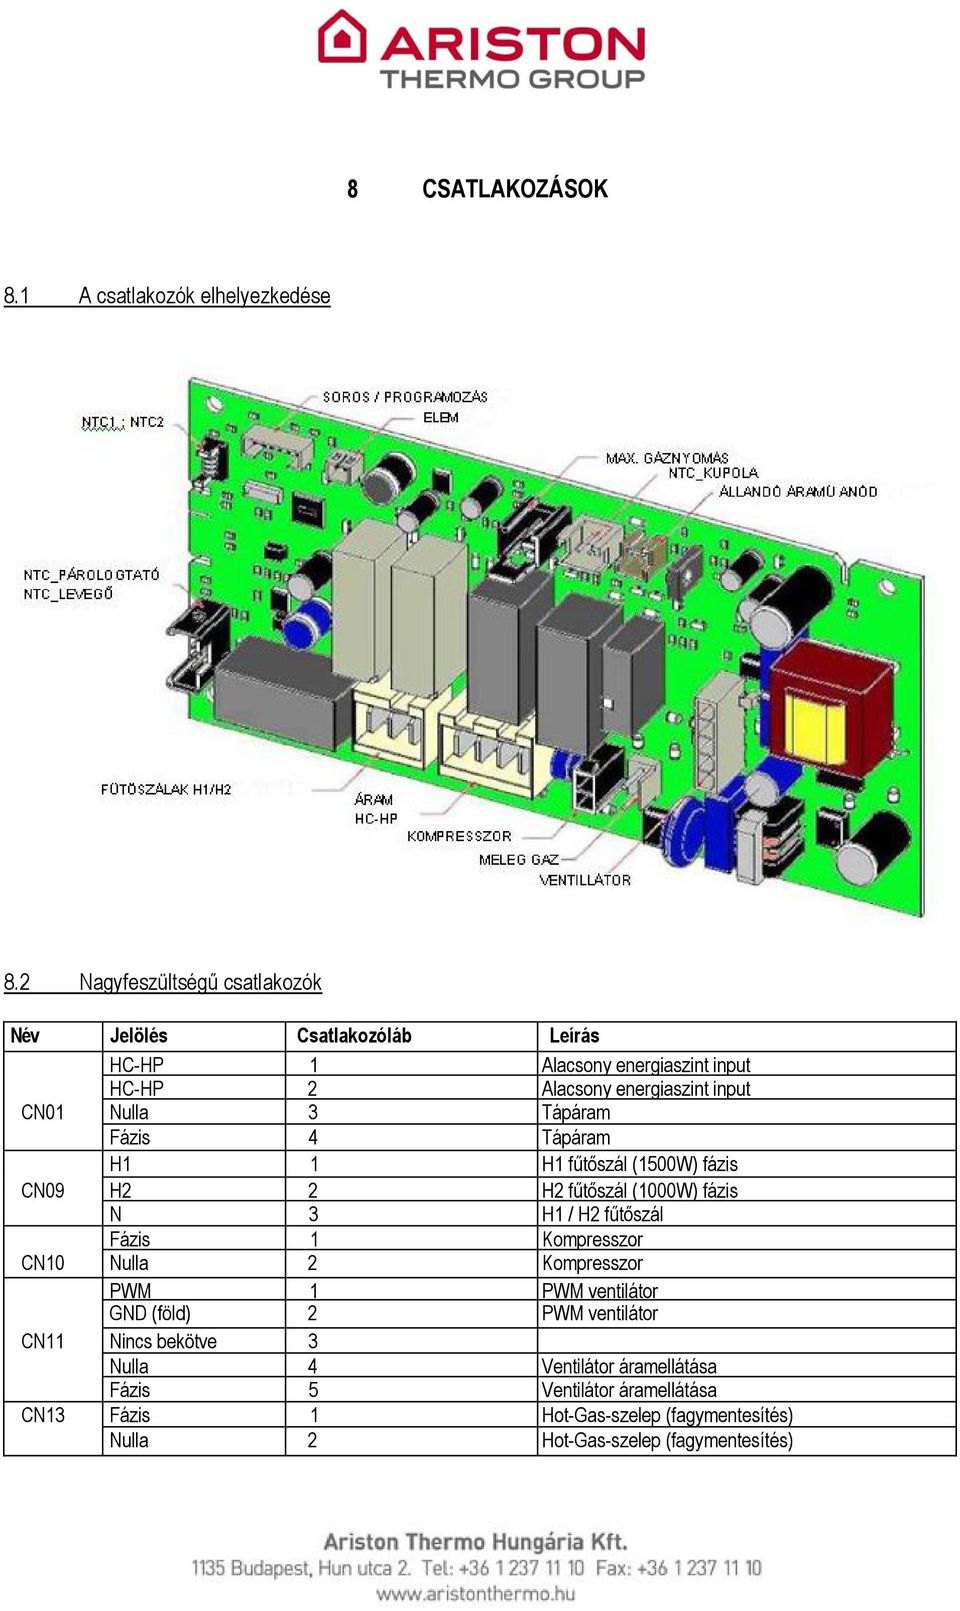 Nulla 3 Tápáram Fázis 4 Tápáram H1 1 H1 fűtőszál (1500W) fázis CN09 H2 2 H2 fűtőszál (1000W) fázis N 3 H1 / H2 fűtőszál Fázis 1 Kompresszor